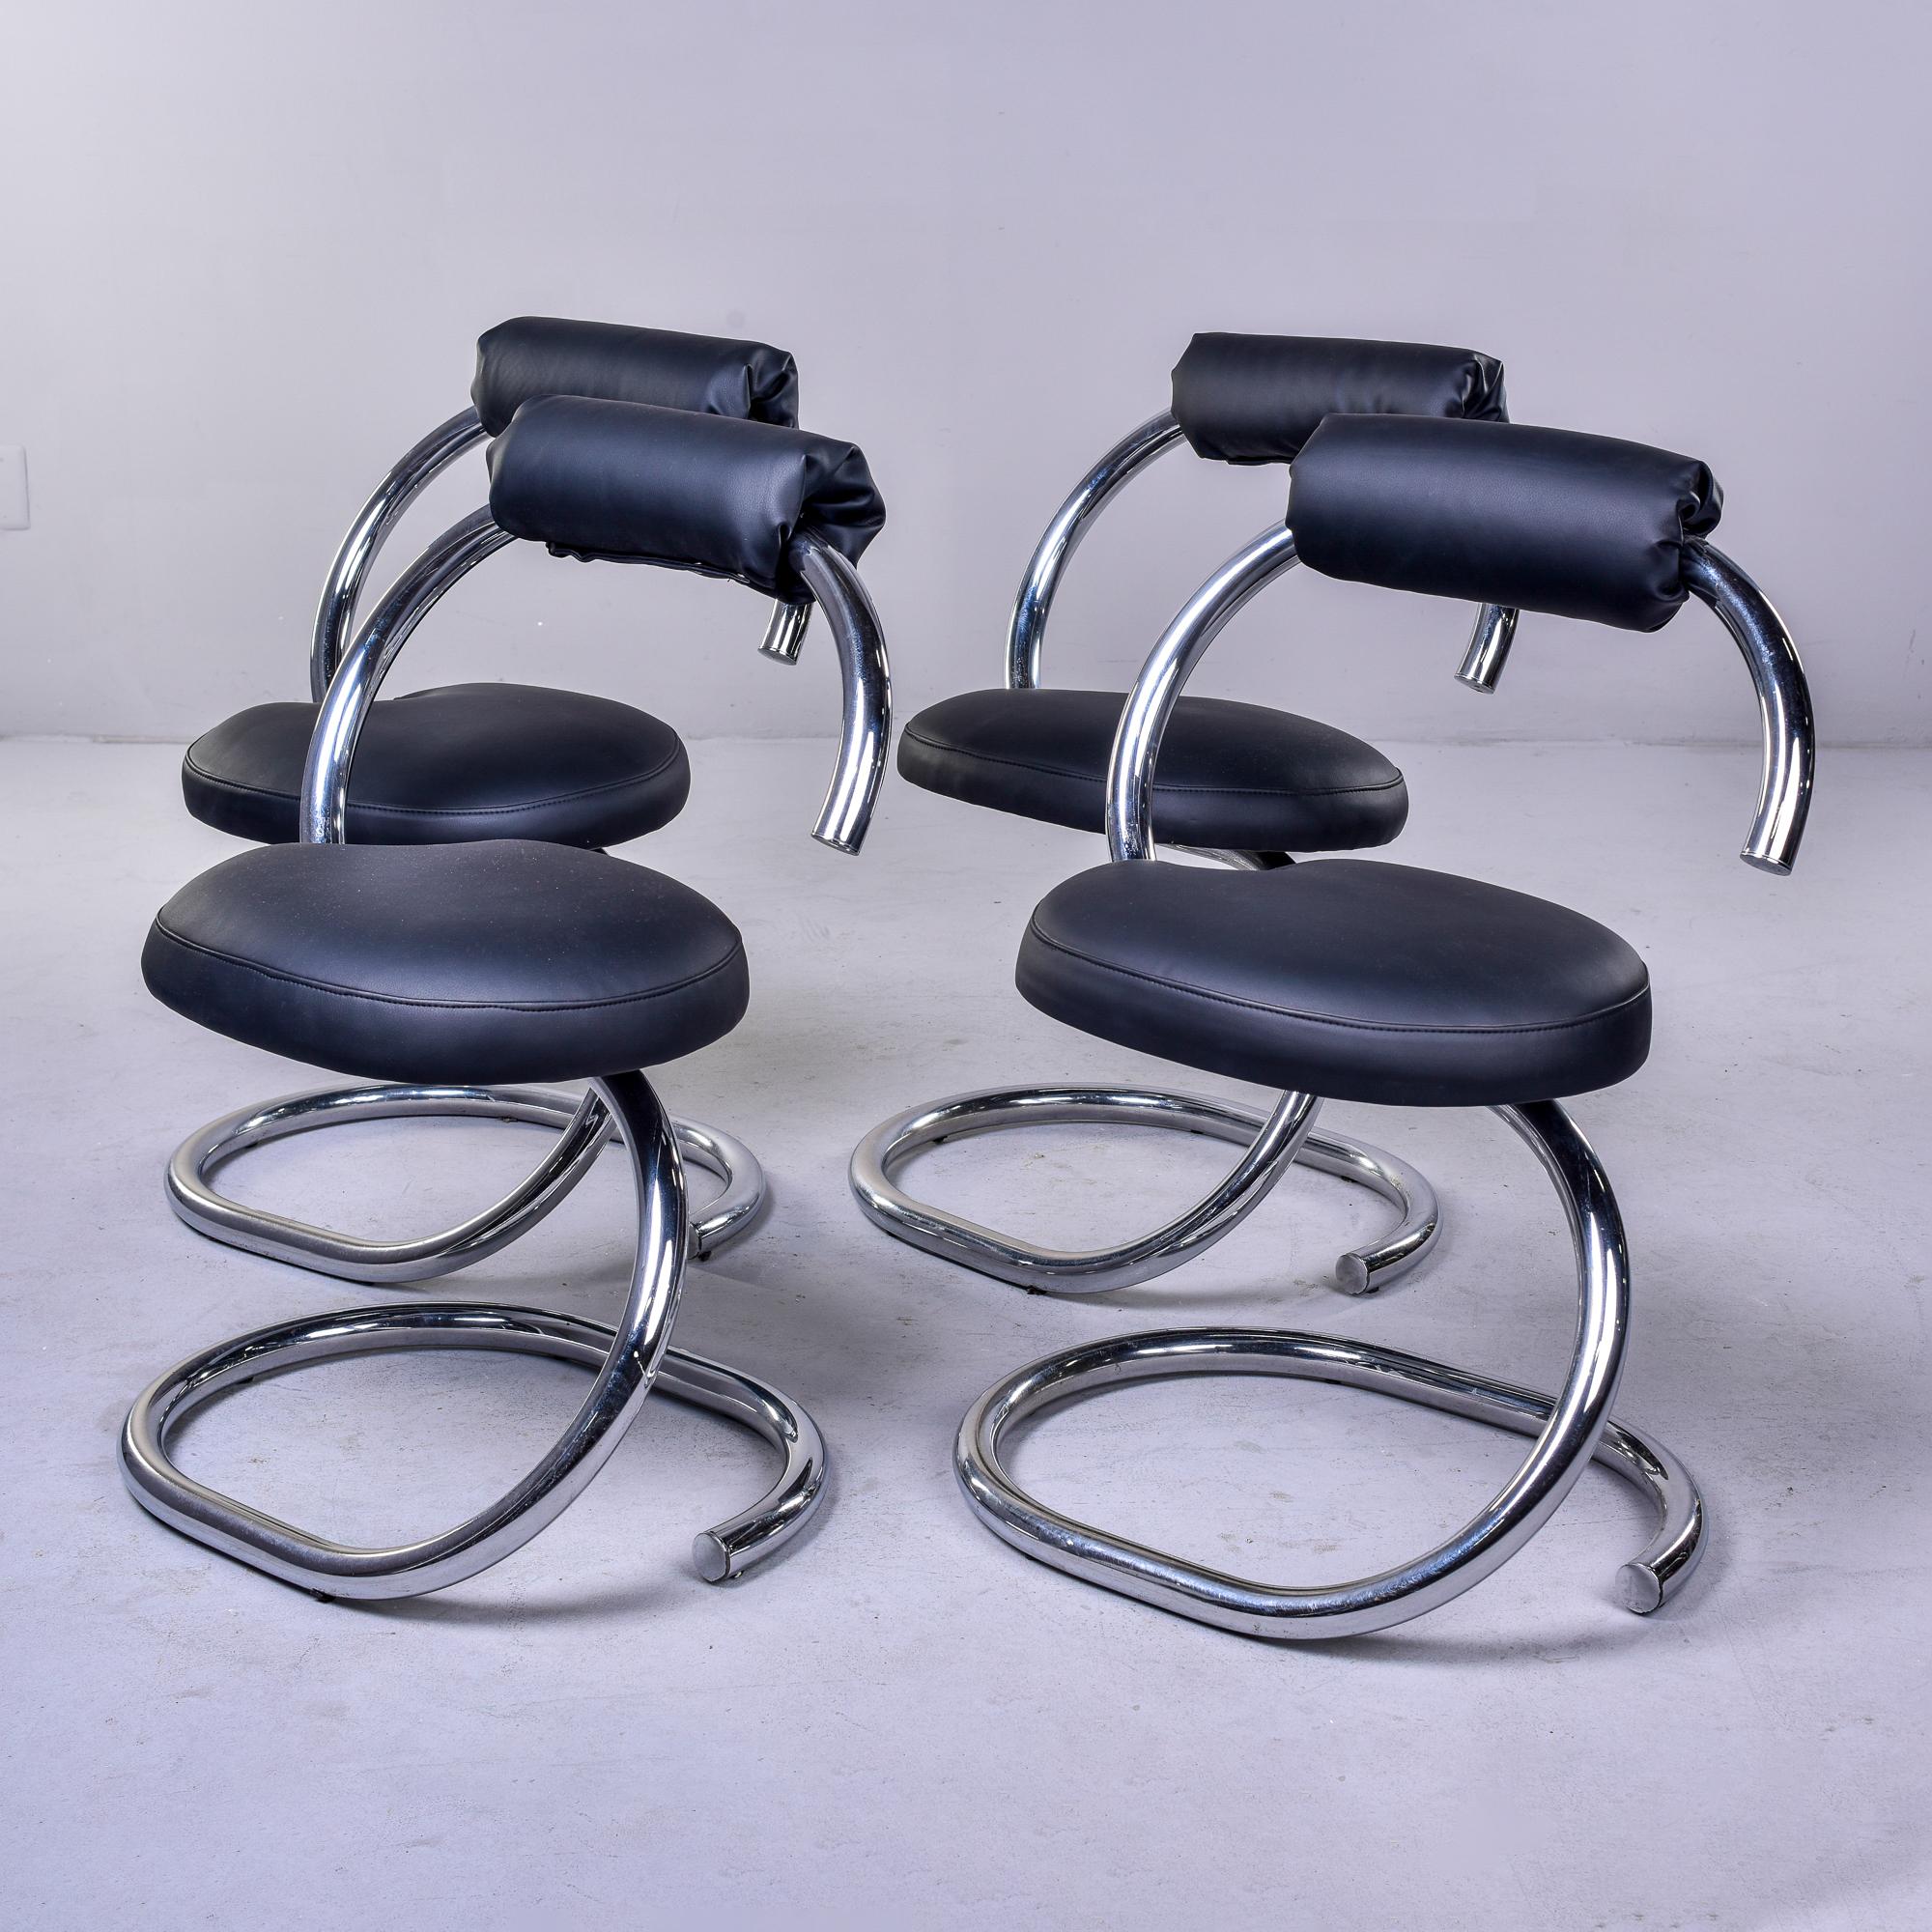 Dieses Set aus vier verchromten Stühlen aus den 1970er Jahren wurde in Frankreich gefunden und zeichnet sich durch ein offenes, spiralförmiges Chromgestell und schwarze Kunstledersitze und -rückenlehnen aus. Unbekannter Hersteller. Verkauft und